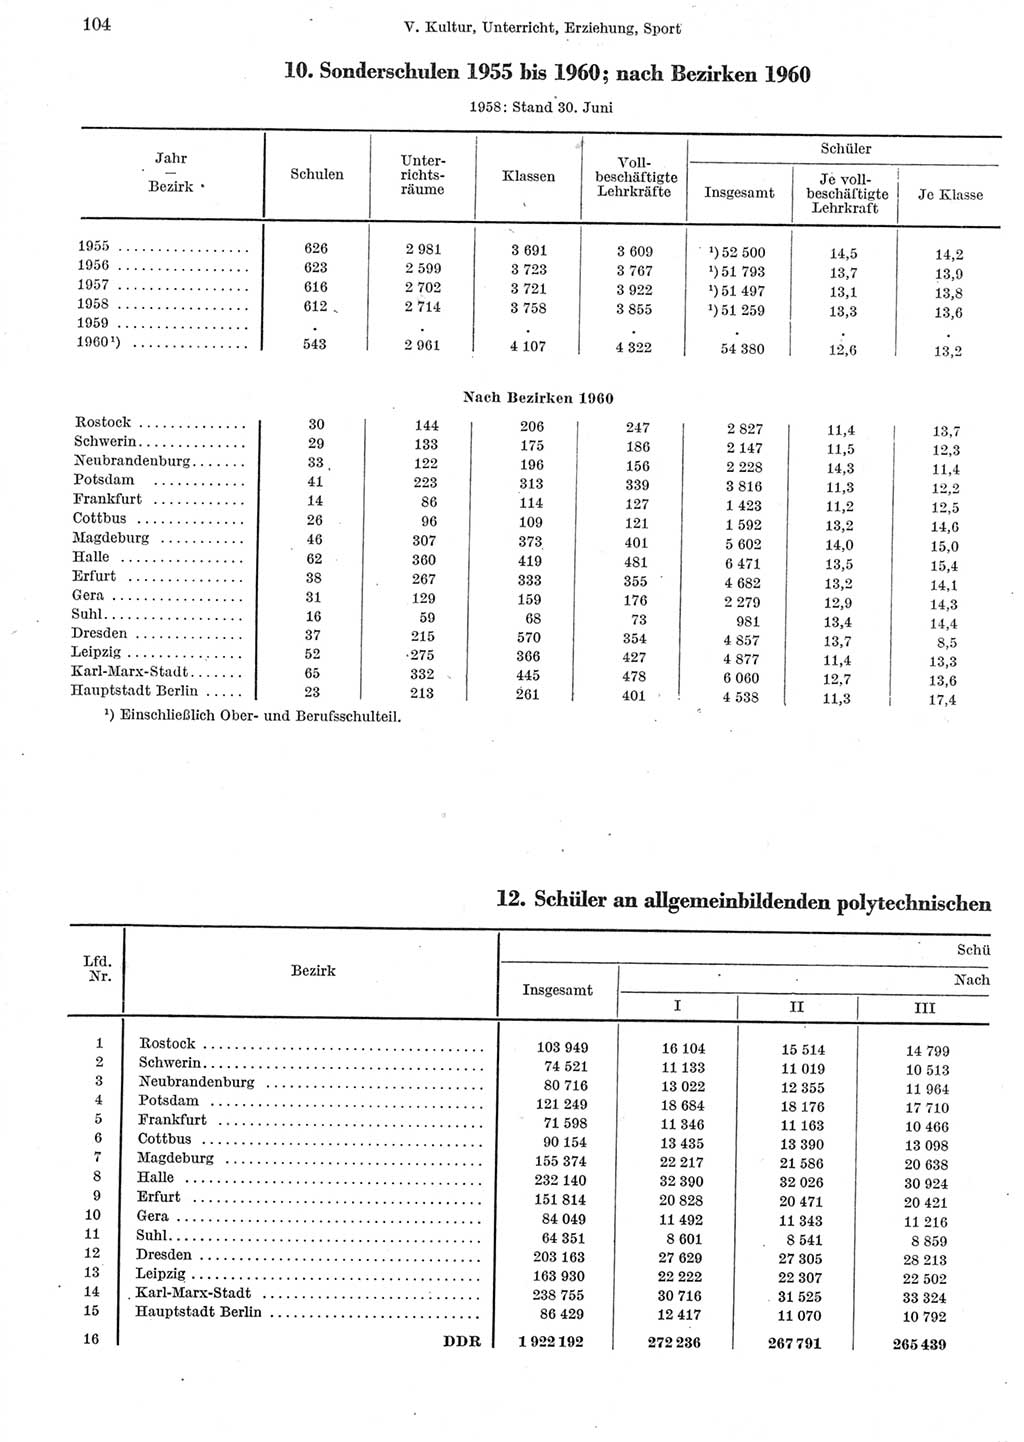 Statistisches Jahrbuch der Deutschen Demokratischen Republik (DDR) 1962, Seite 104 (Stat. Jb. DDR 1962, S. 104)